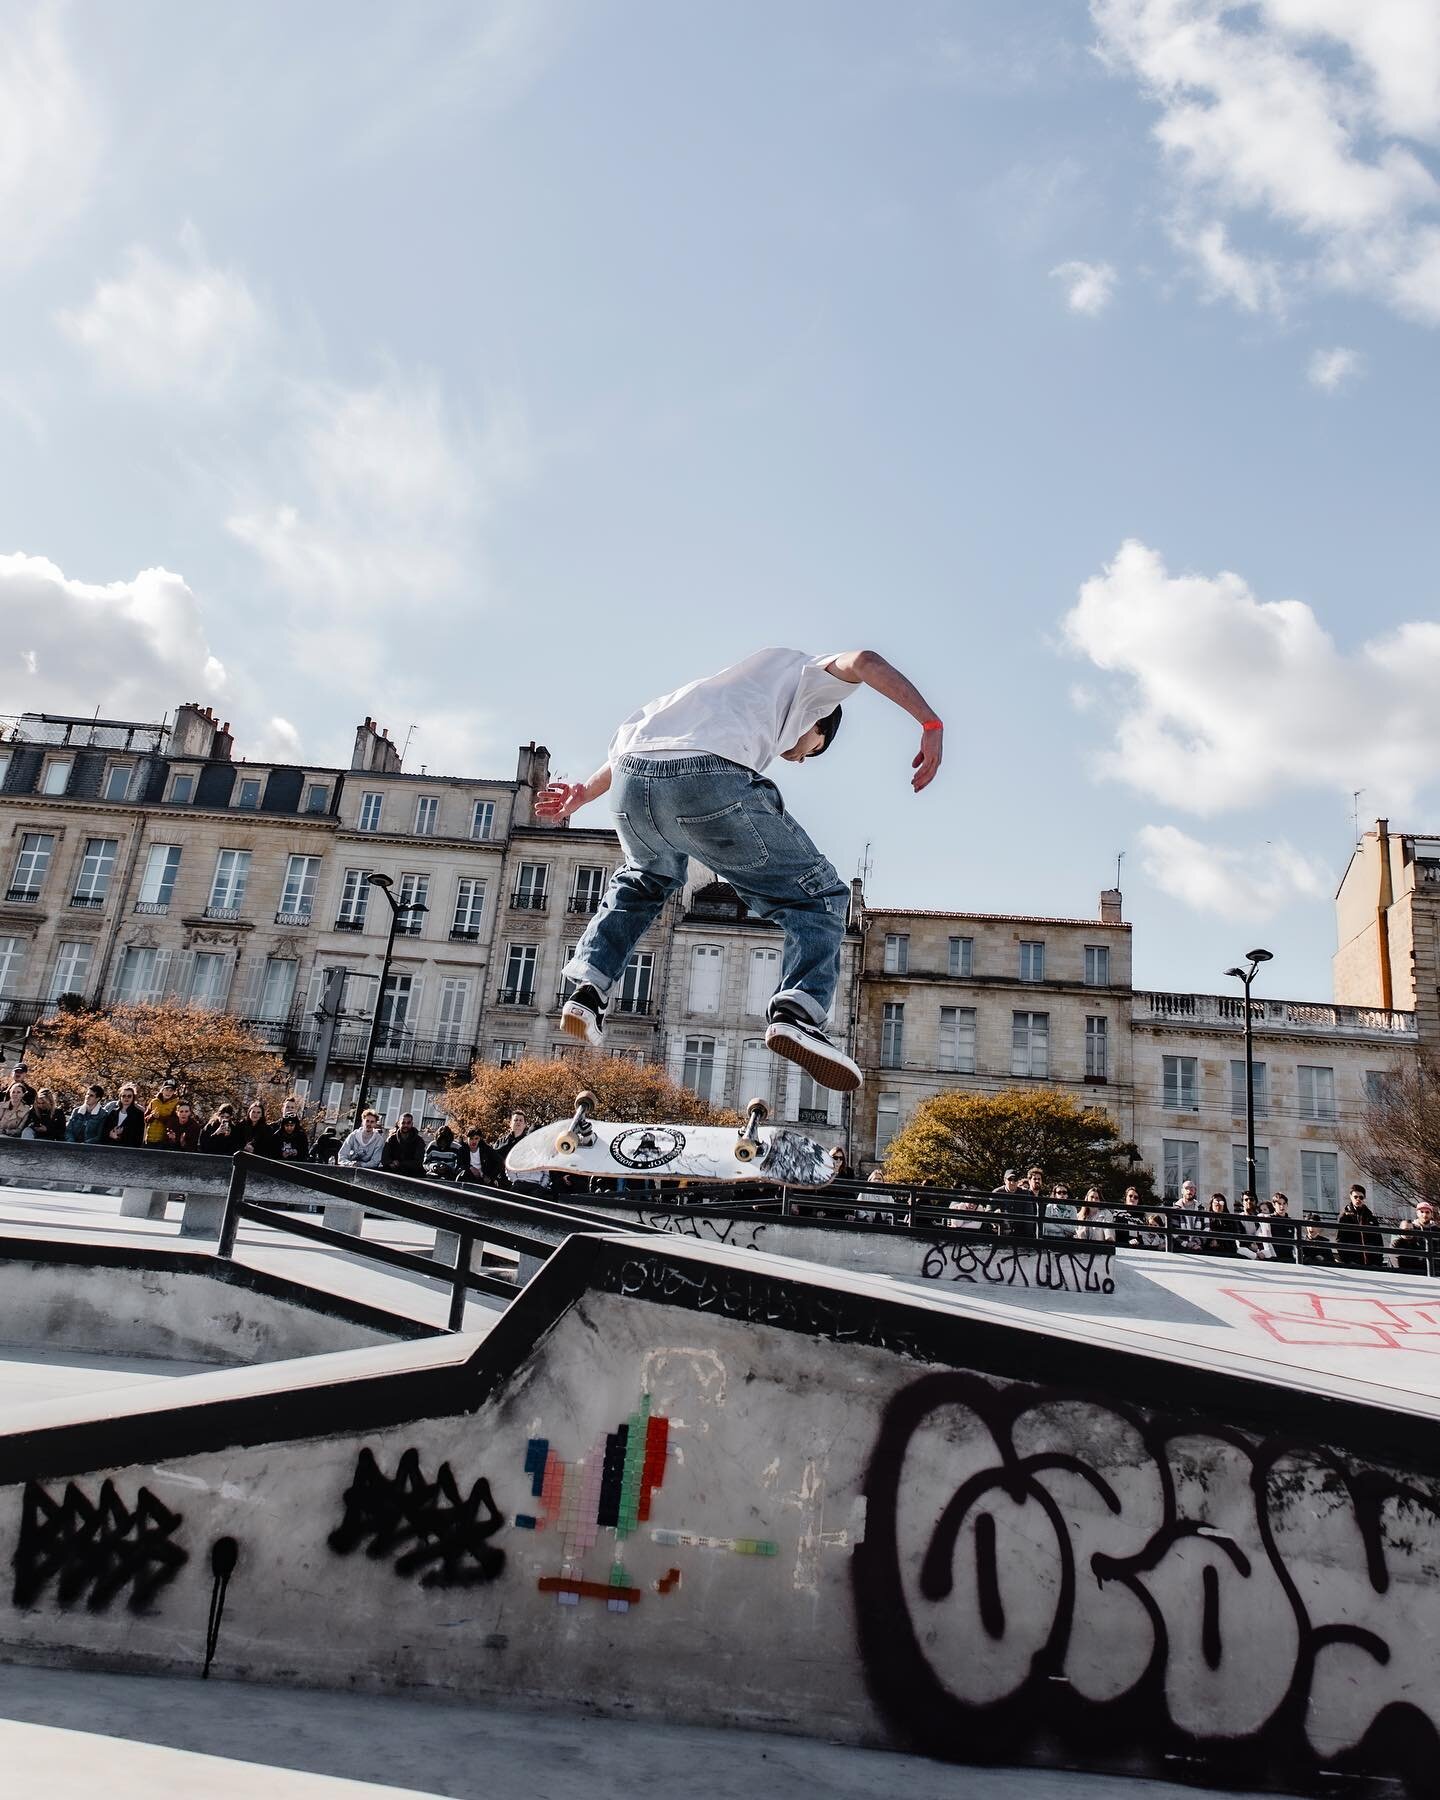 Grinding 🤘🏻🛹

📸 @bordeauxskateculture 

#sk8 #skater #skatebordeaux #skatepark #gironde #bordeaux